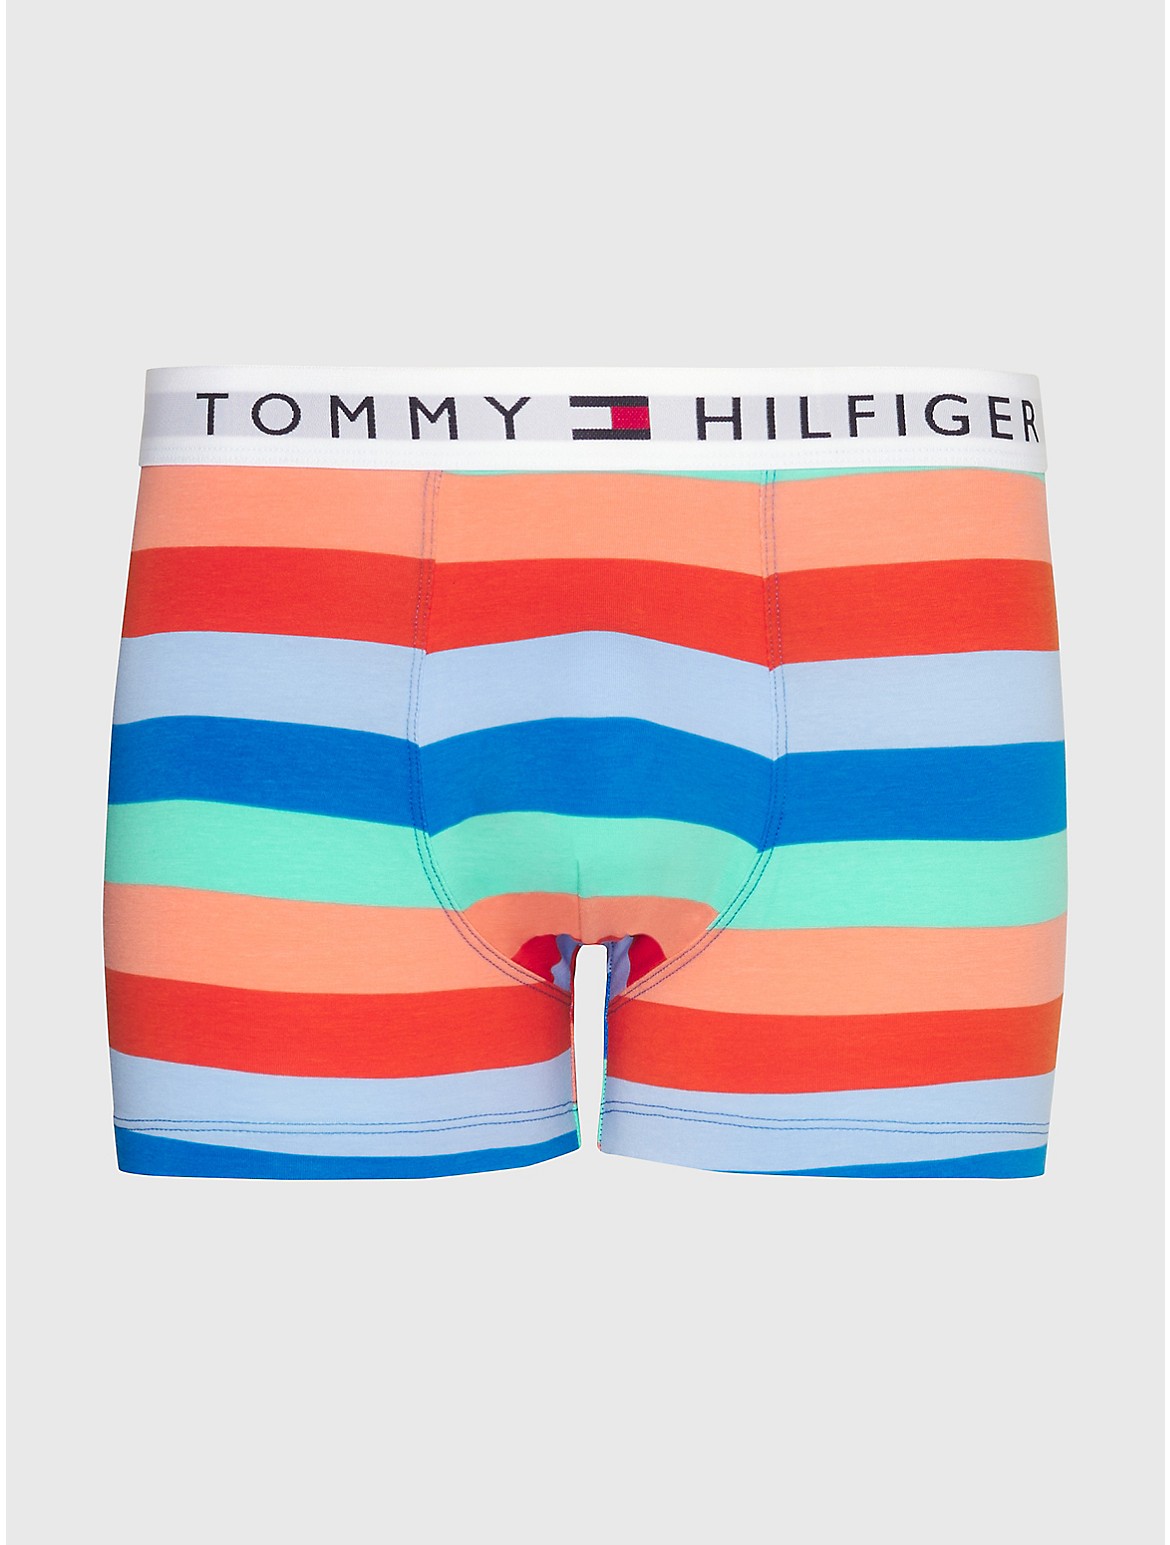 Tommy Hilfiger Men's Bold Stripe Stretch Trunk - Multi - S